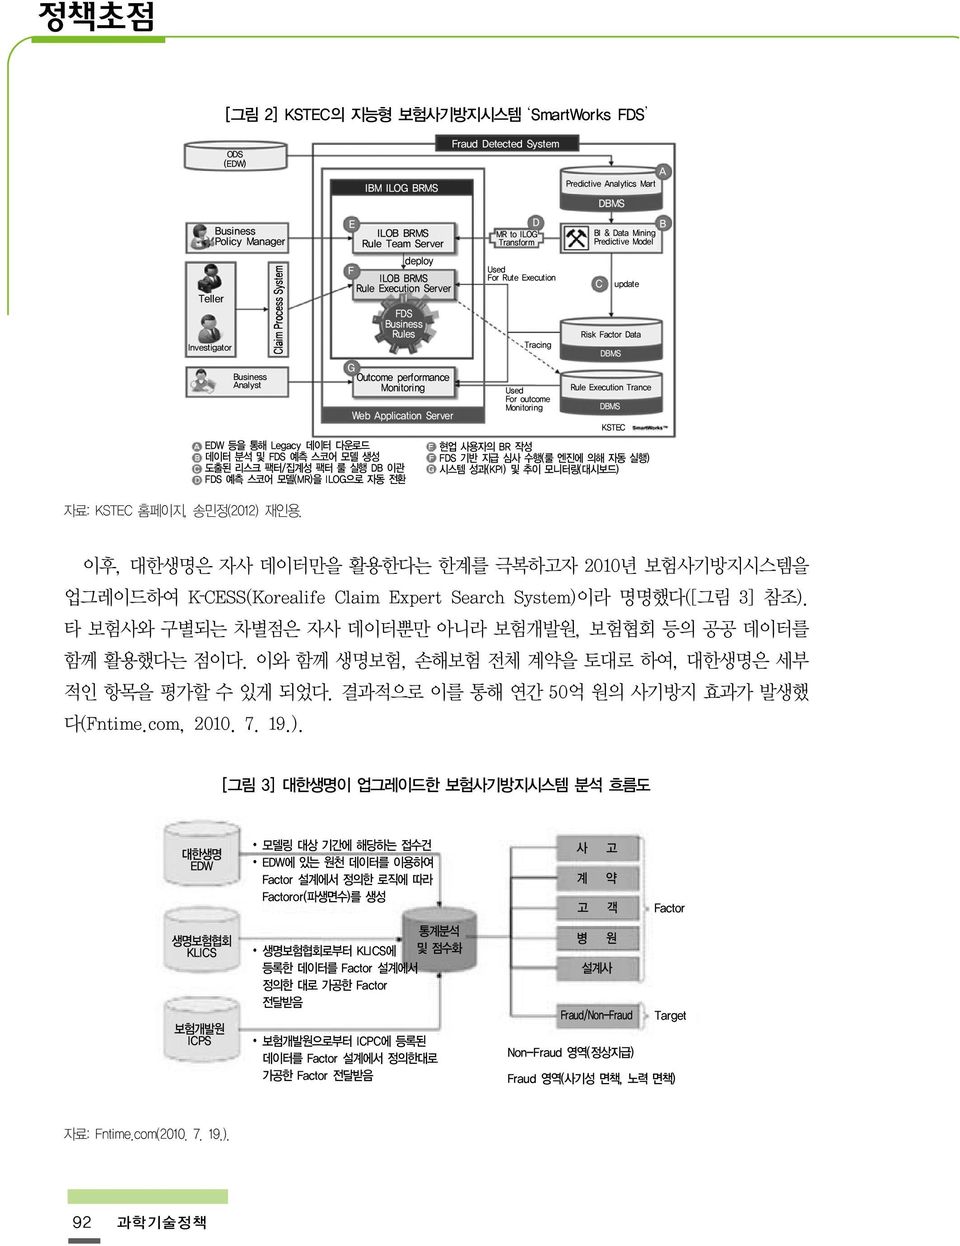 자료: KSTEC 홈페이지, 송민정(2012) 재인용.